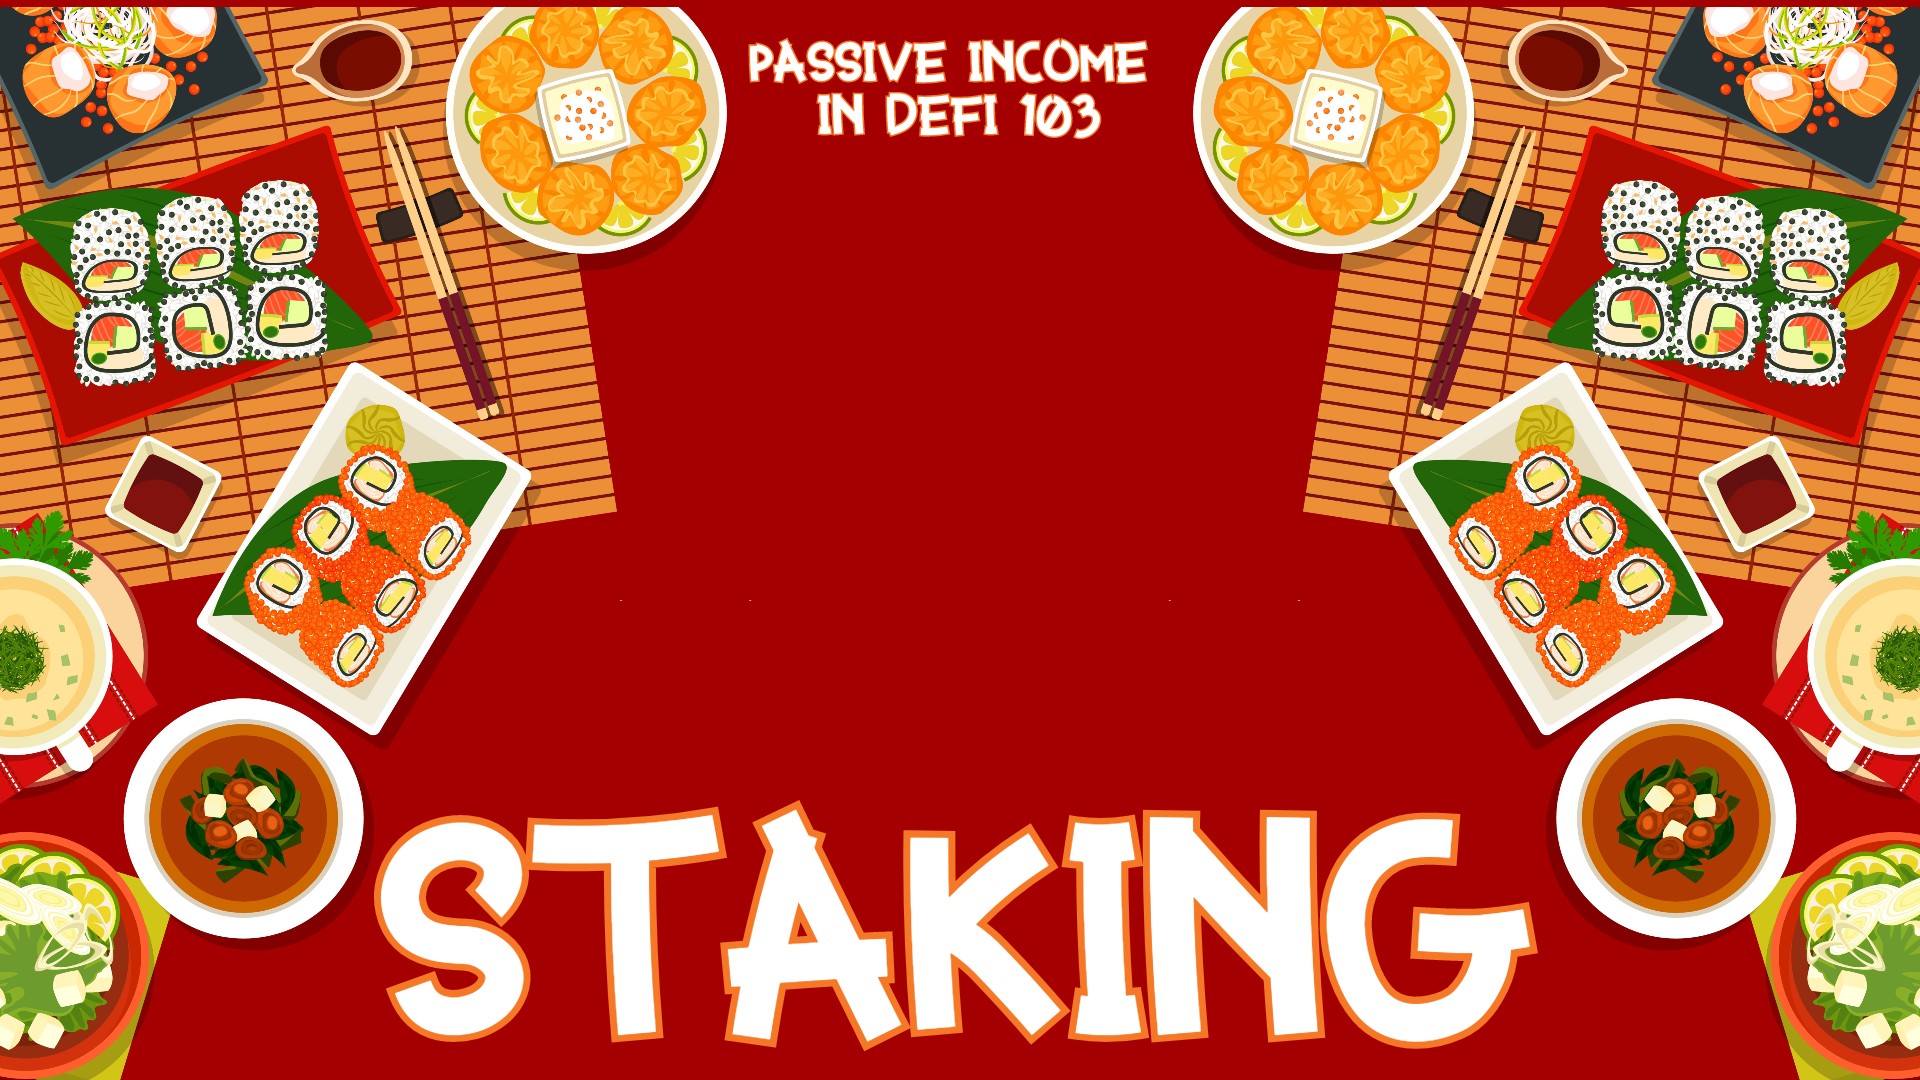 Passive Income in DeFi 103: Staking